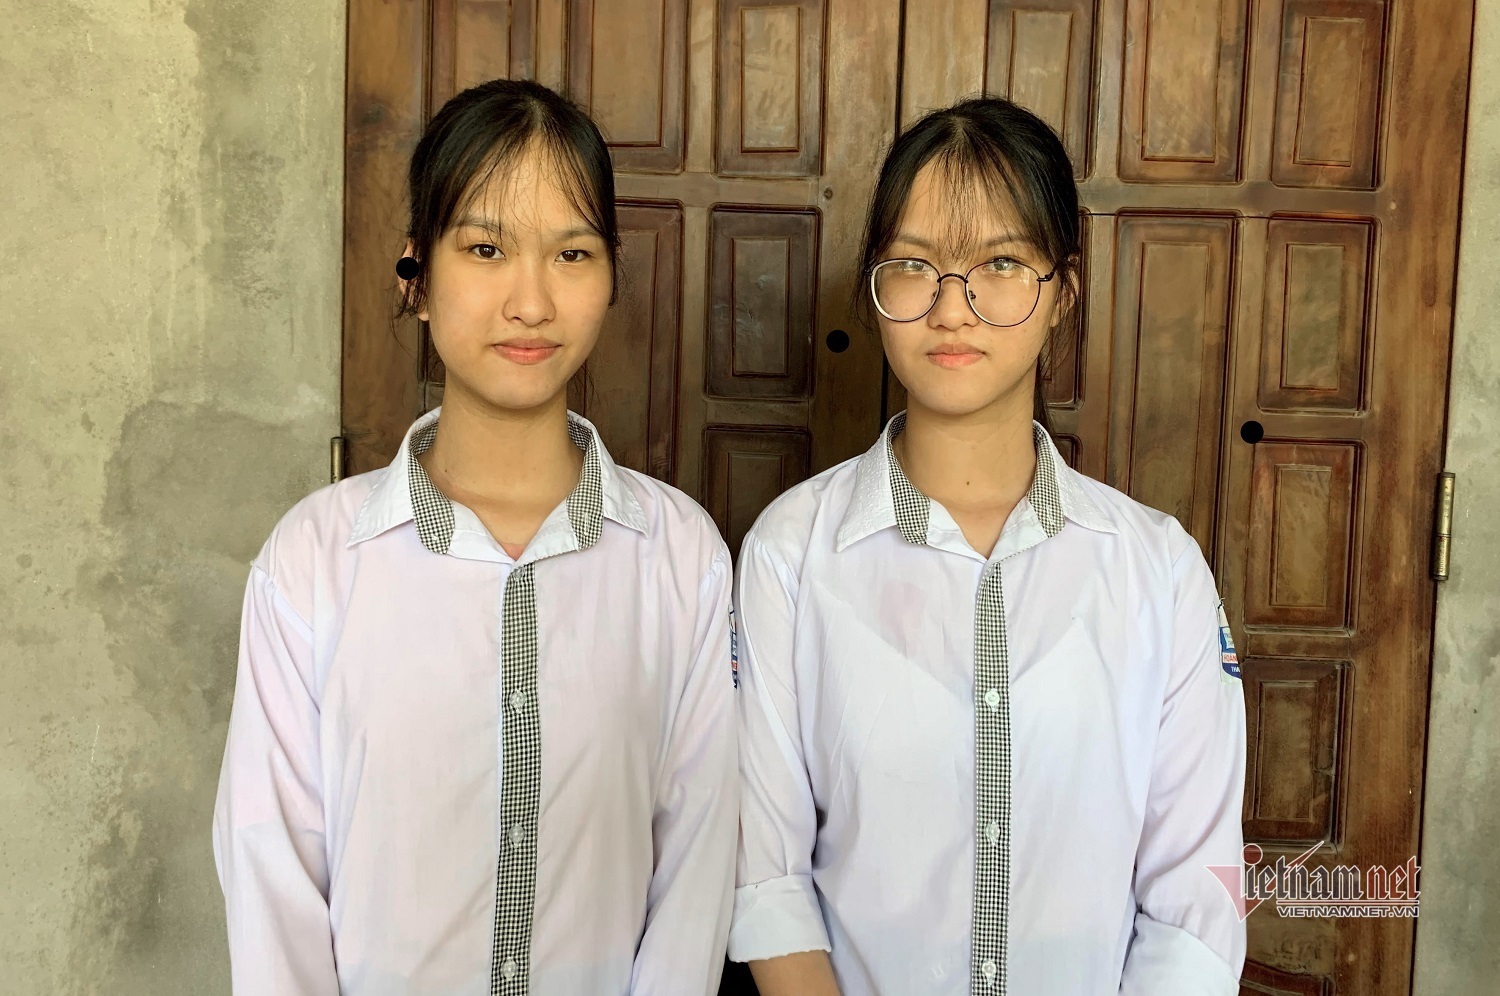 分離手術から17年 大学生になった結合双生児の姉妹 特集 Vietjoベトナムニュース